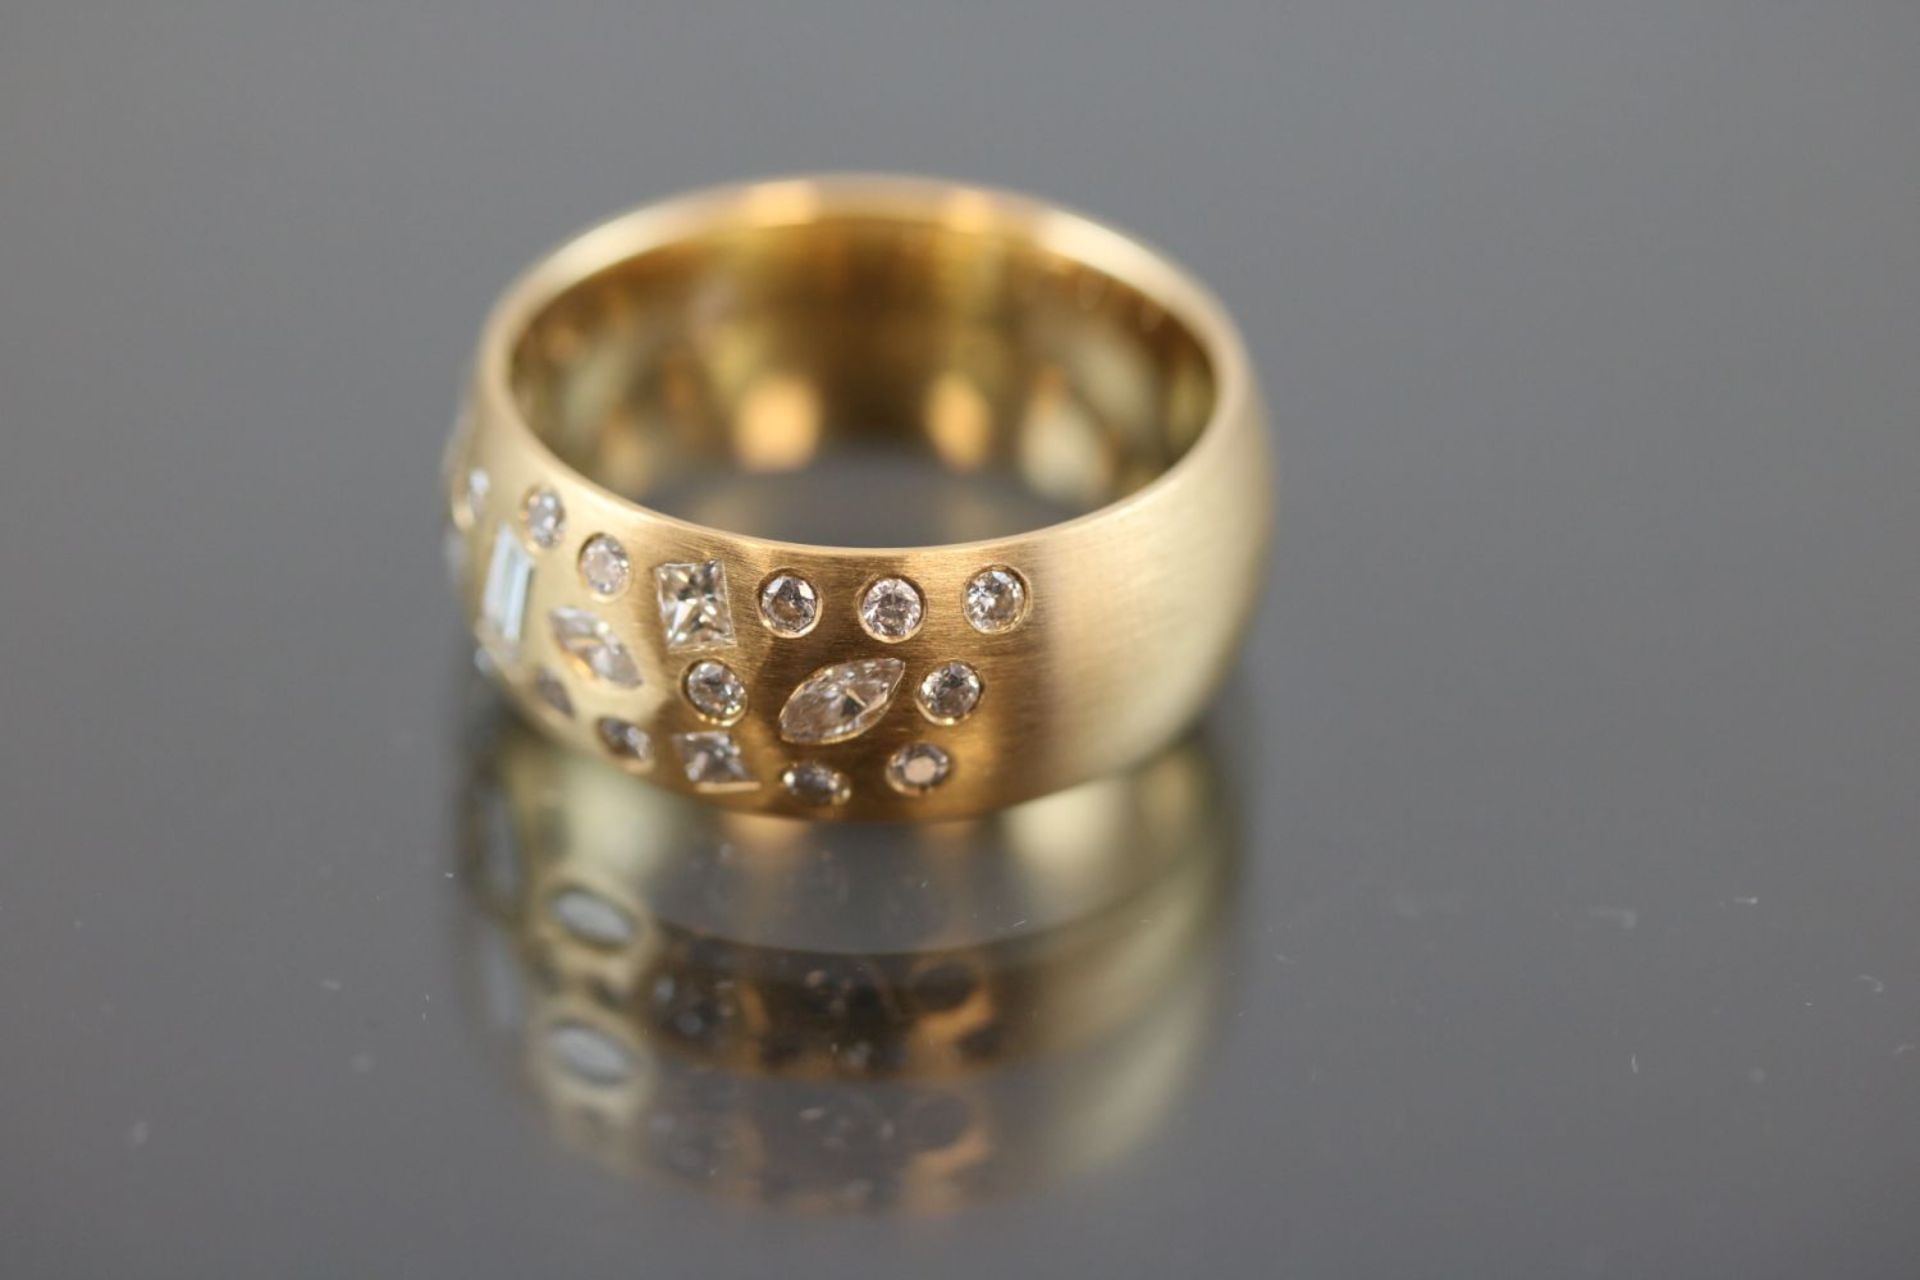 Design-Brillant-Ring, 750 Gelbgold10 Gramm 32 Brillanten / Diamanten, 2,37 ct., w/si. Ringgröße: - Image 2 of 3